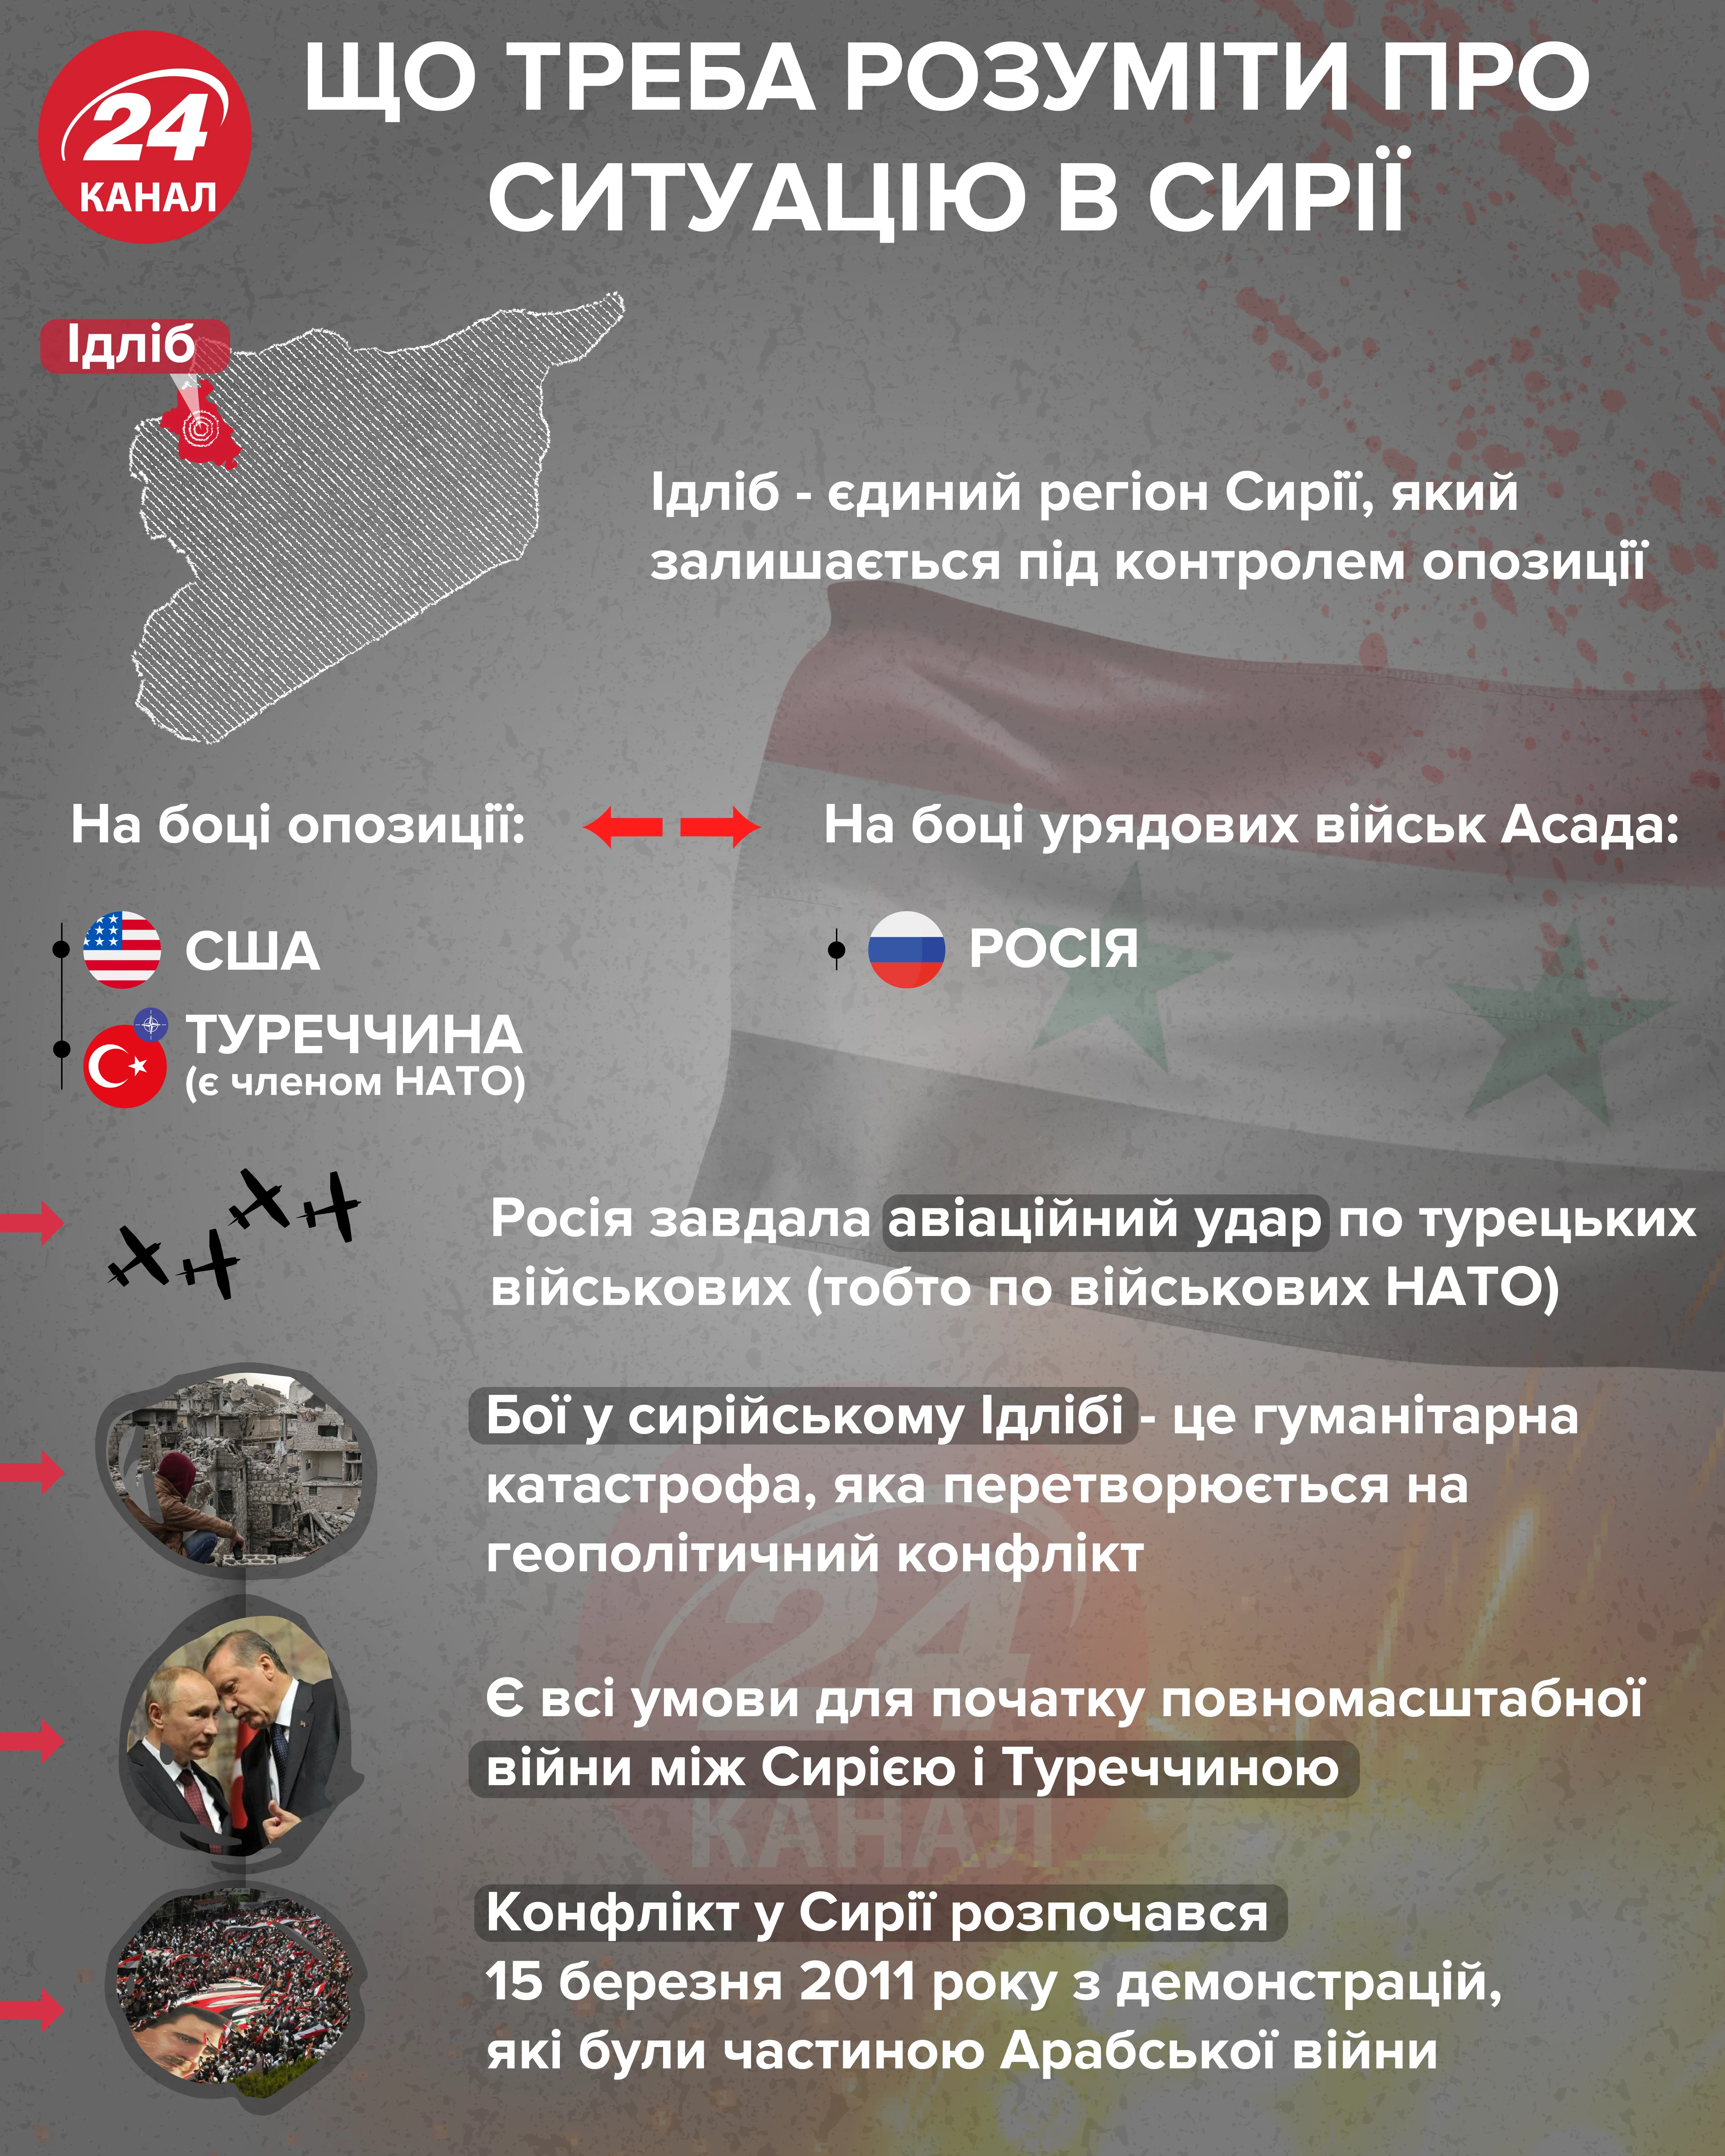 Что надо понимать о ситуации в Сирии / Инфографика 24 канала